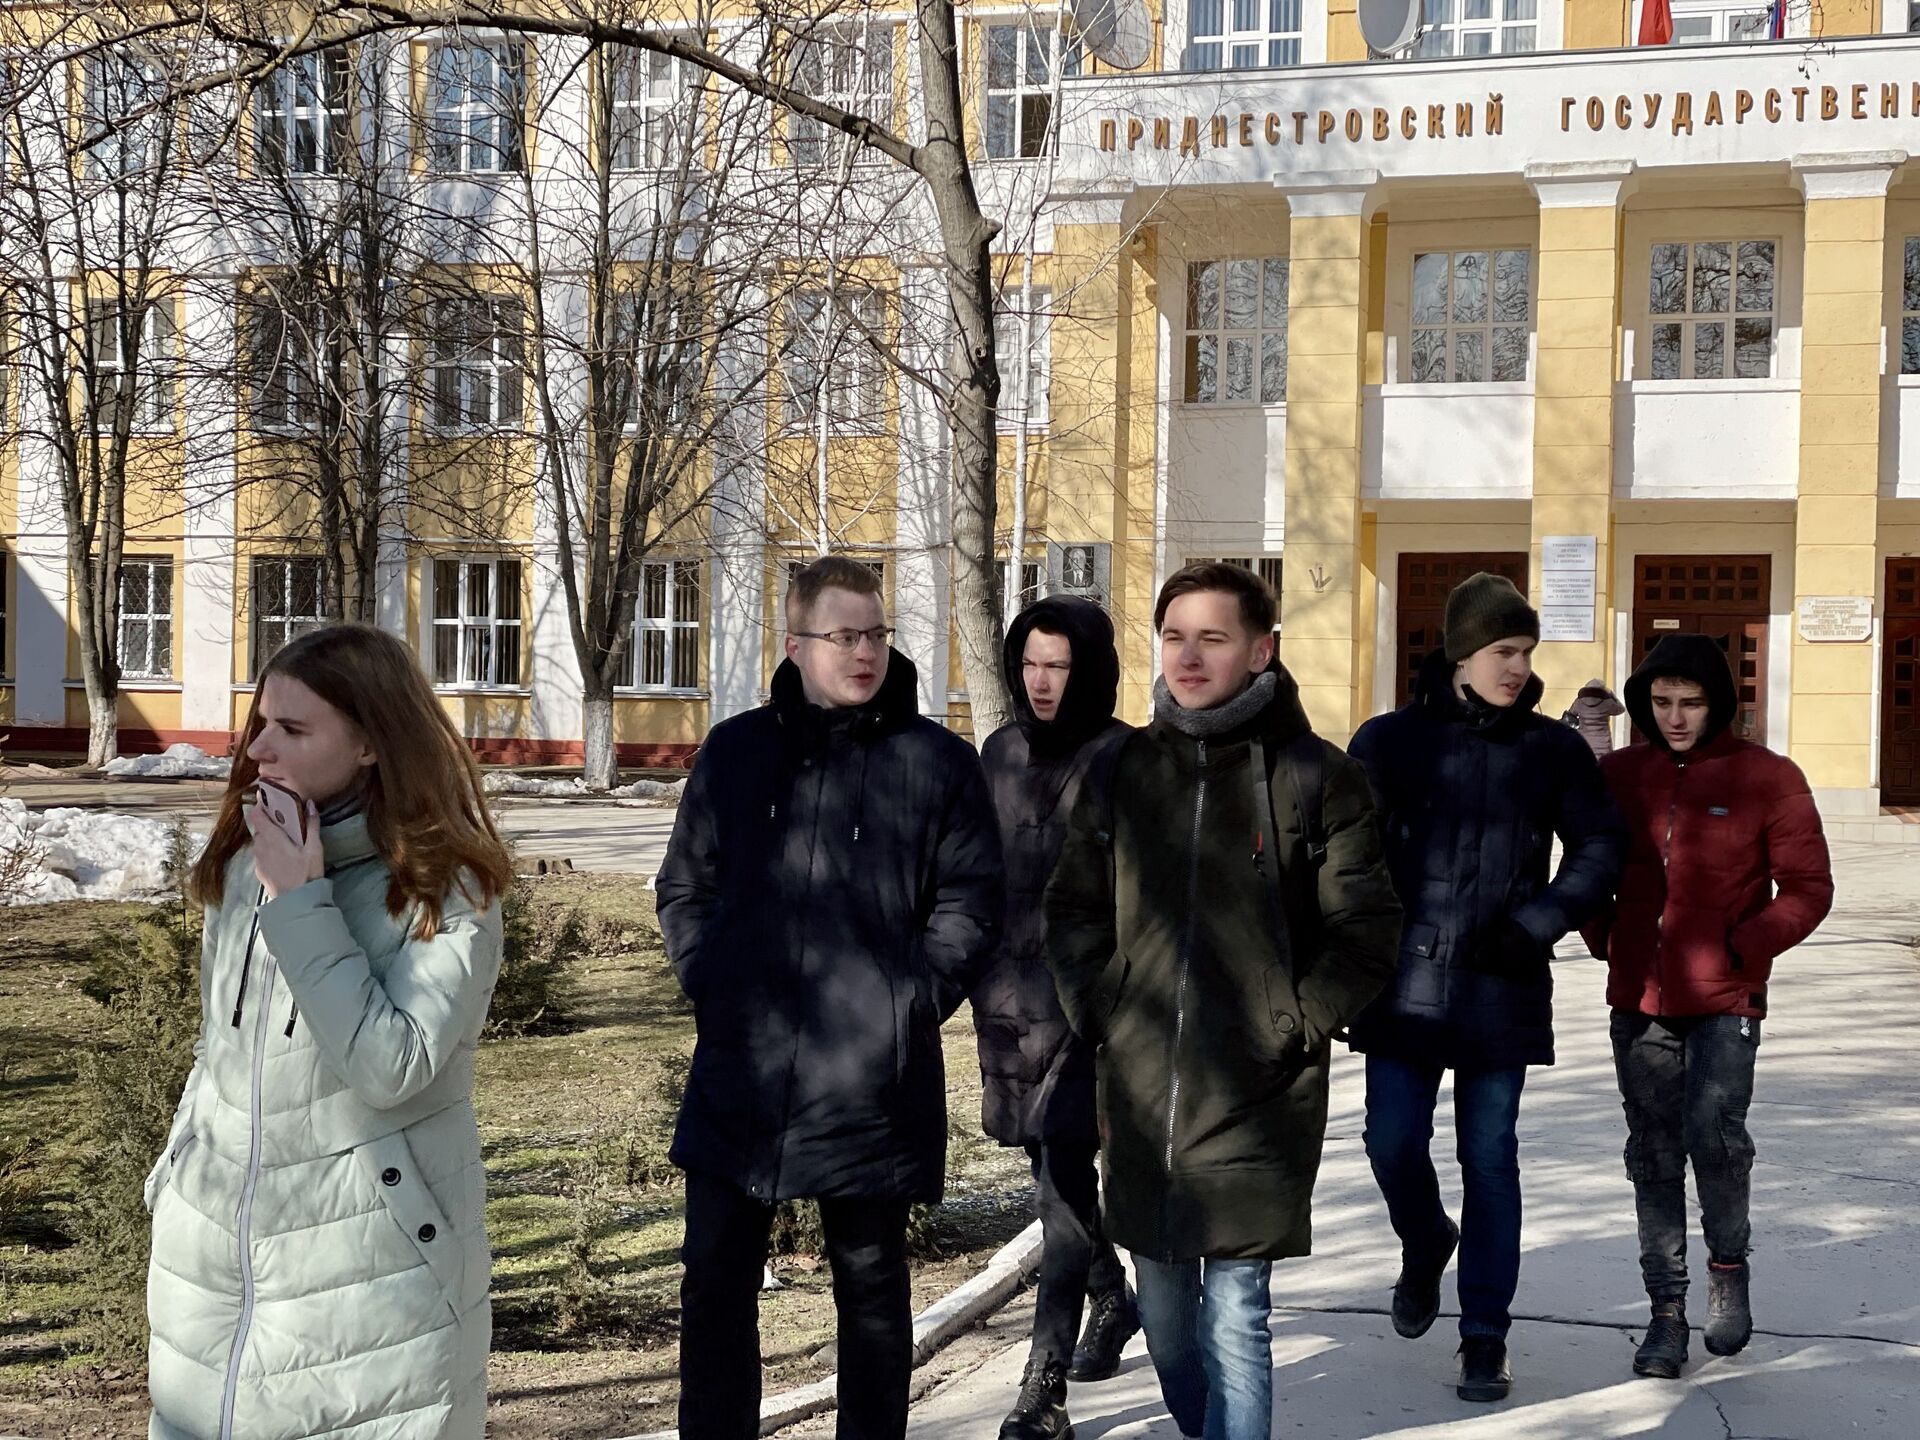 Открытая пара: приднестровские студенты вернулись в офлайн - Sputnik Молдова, 1920, 17.02.2021